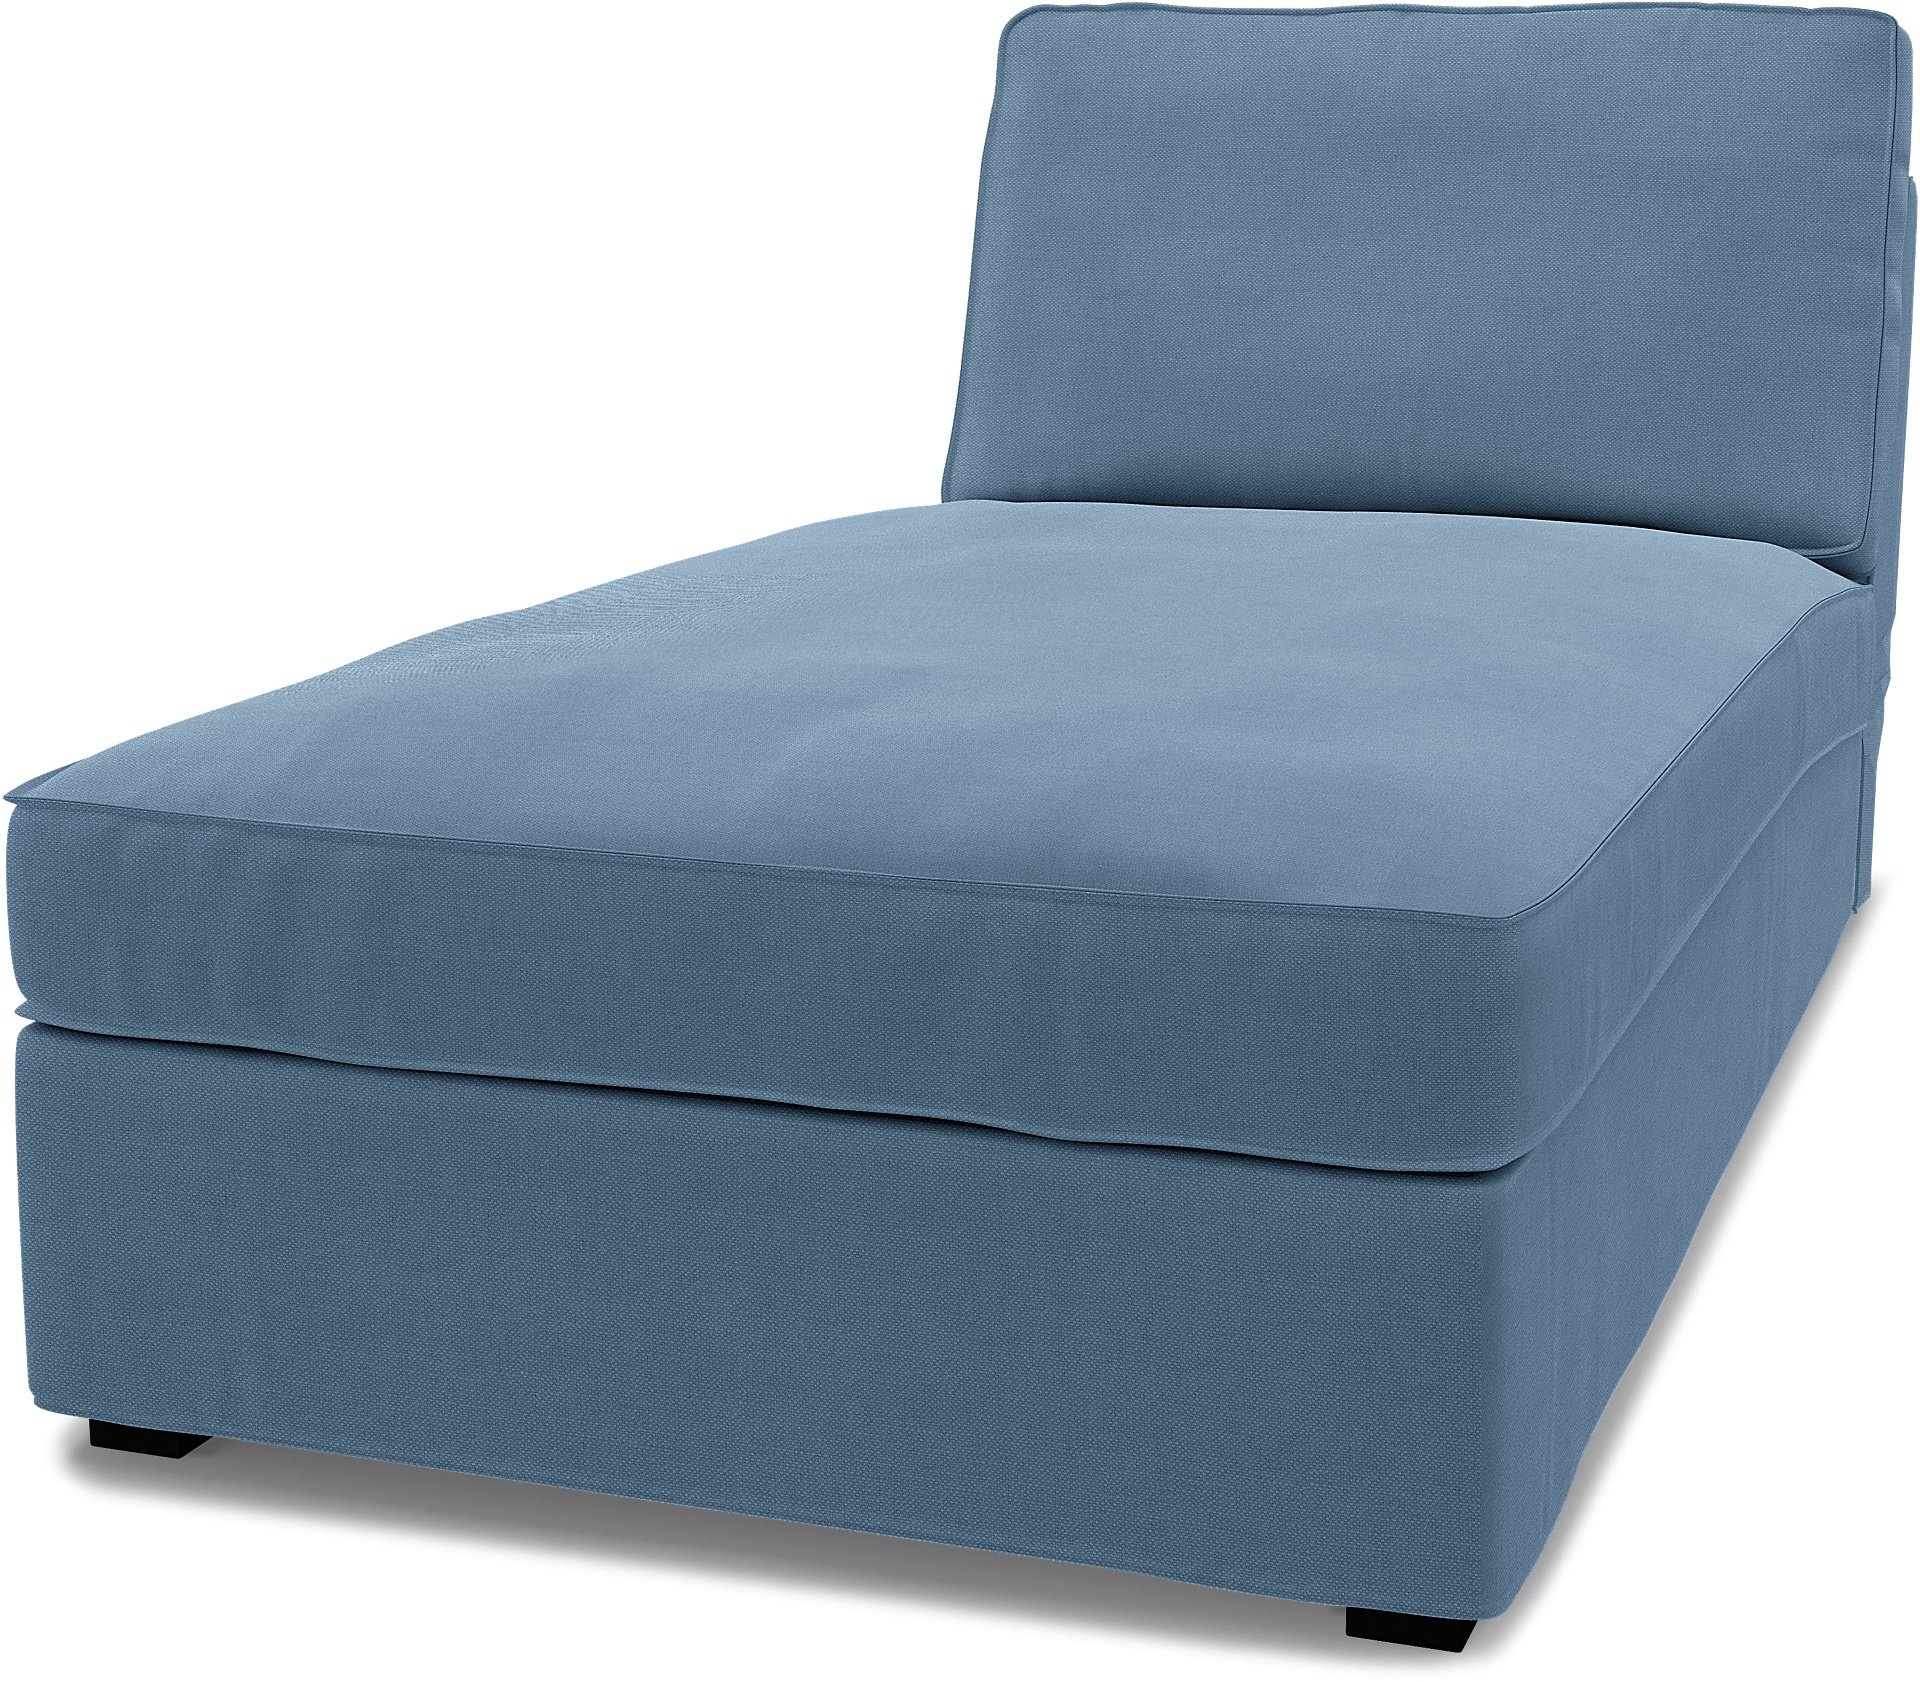 IKEA - Kivik Chaise Longue Cover, Vintage Blue, Linen - Bemz